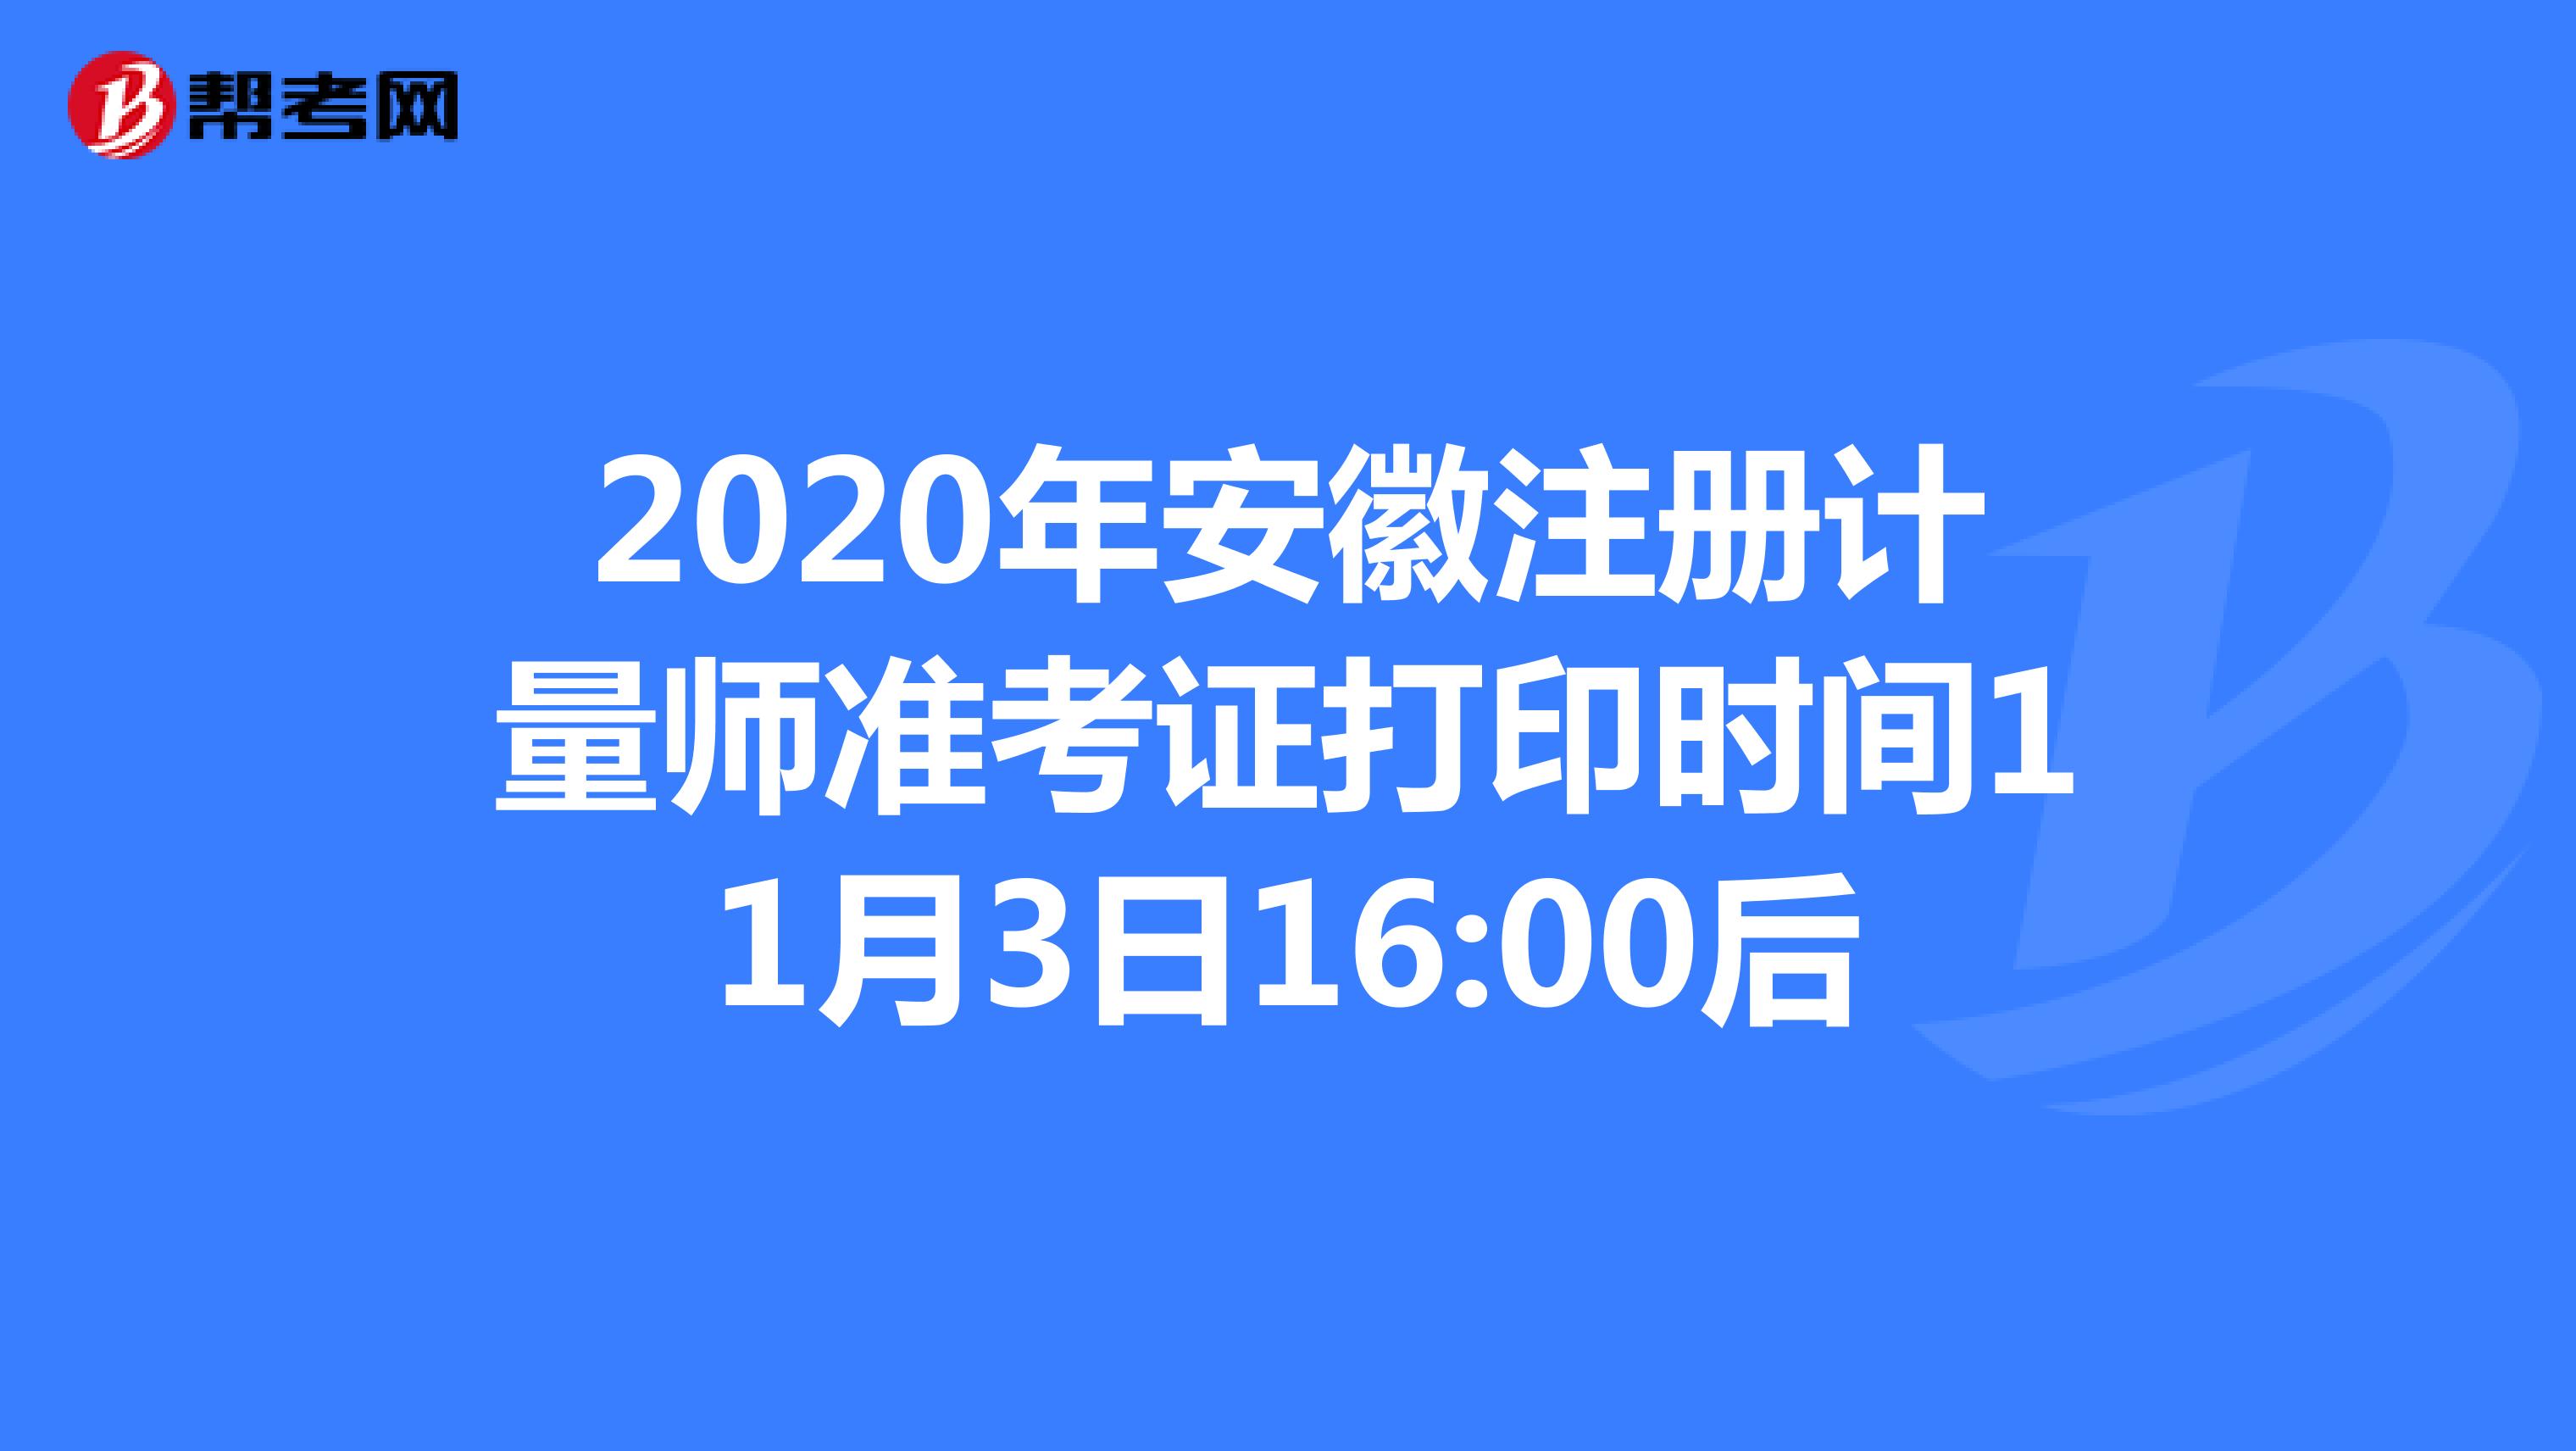 2020年安徽注册计量师准考证打印时间11月3日16:00后